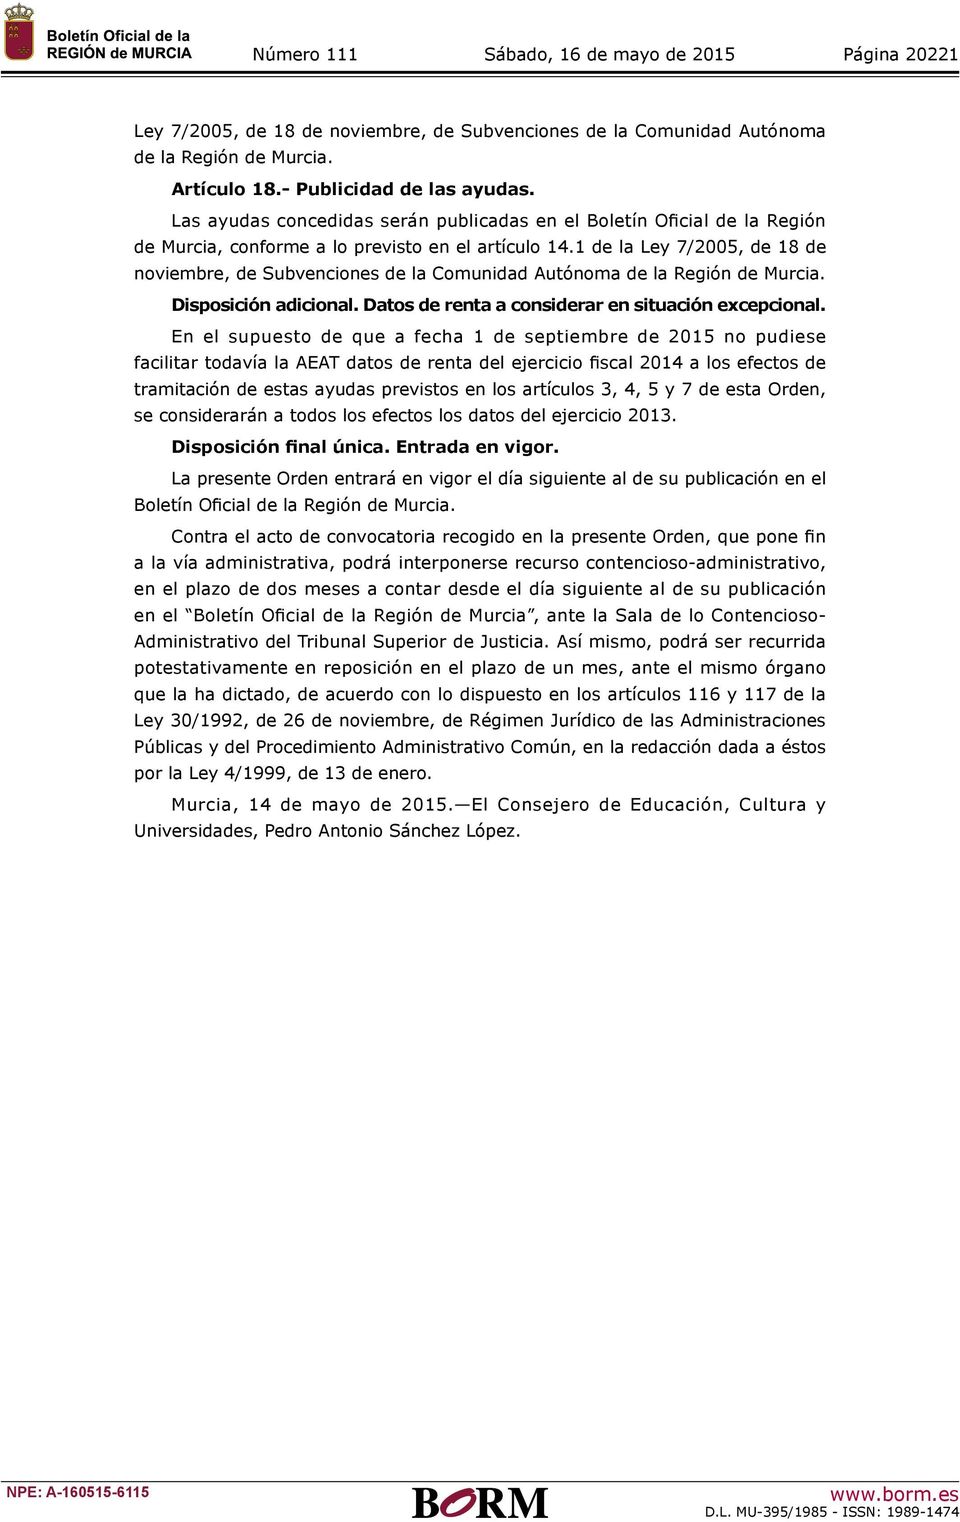 1 de la Ley 7/2005, de 18 de noviembre, de Subvenciones de la Comunidad Autónoma de la Región de Murcia. Disposición adicional. Datos de renta a considerar en situación excepcional.